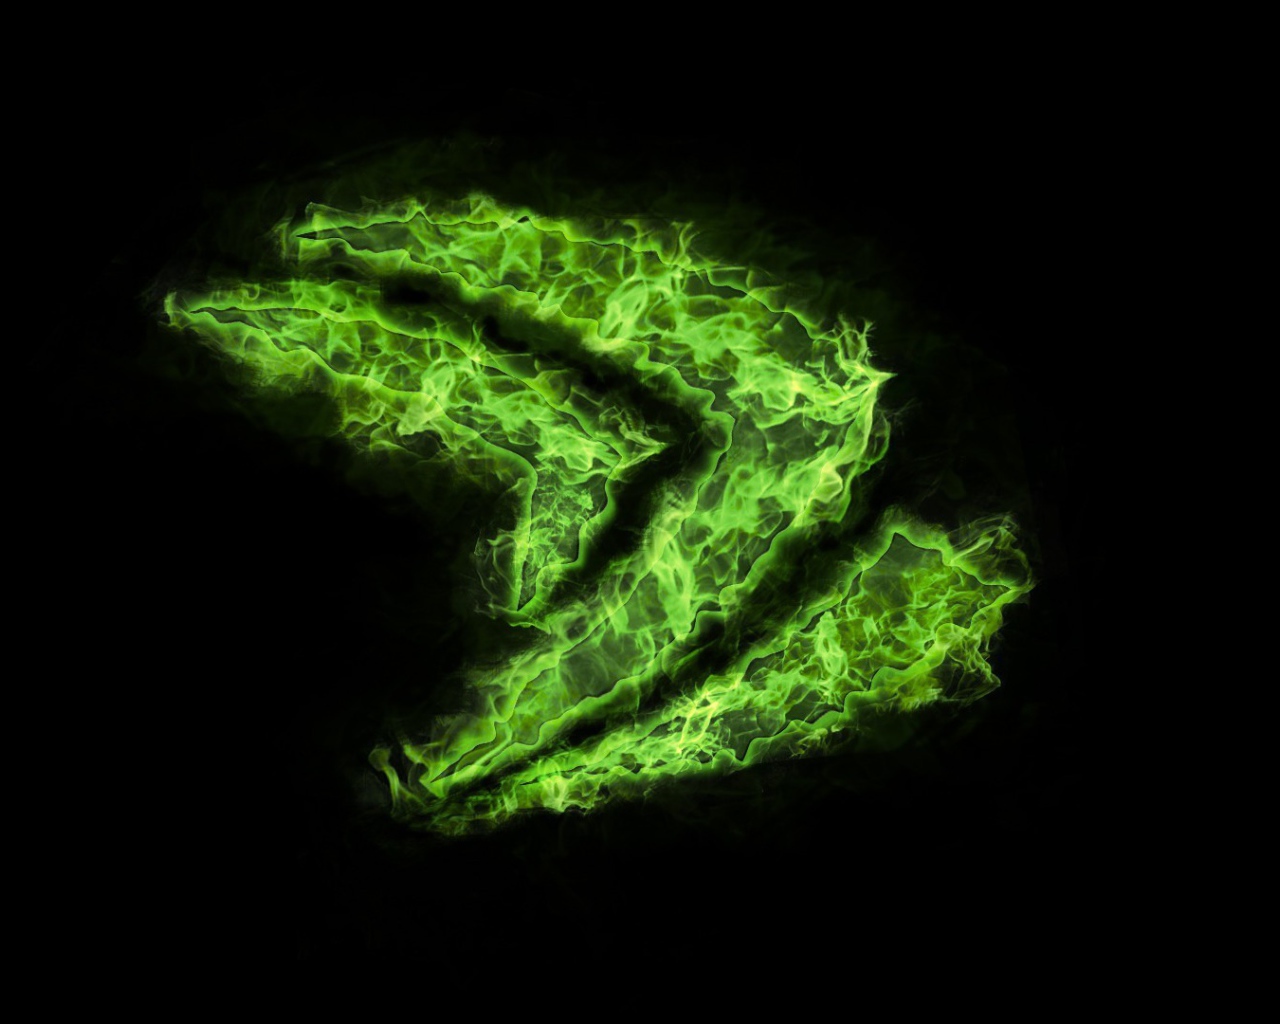 Логотип Nvidia из зеленого пламени